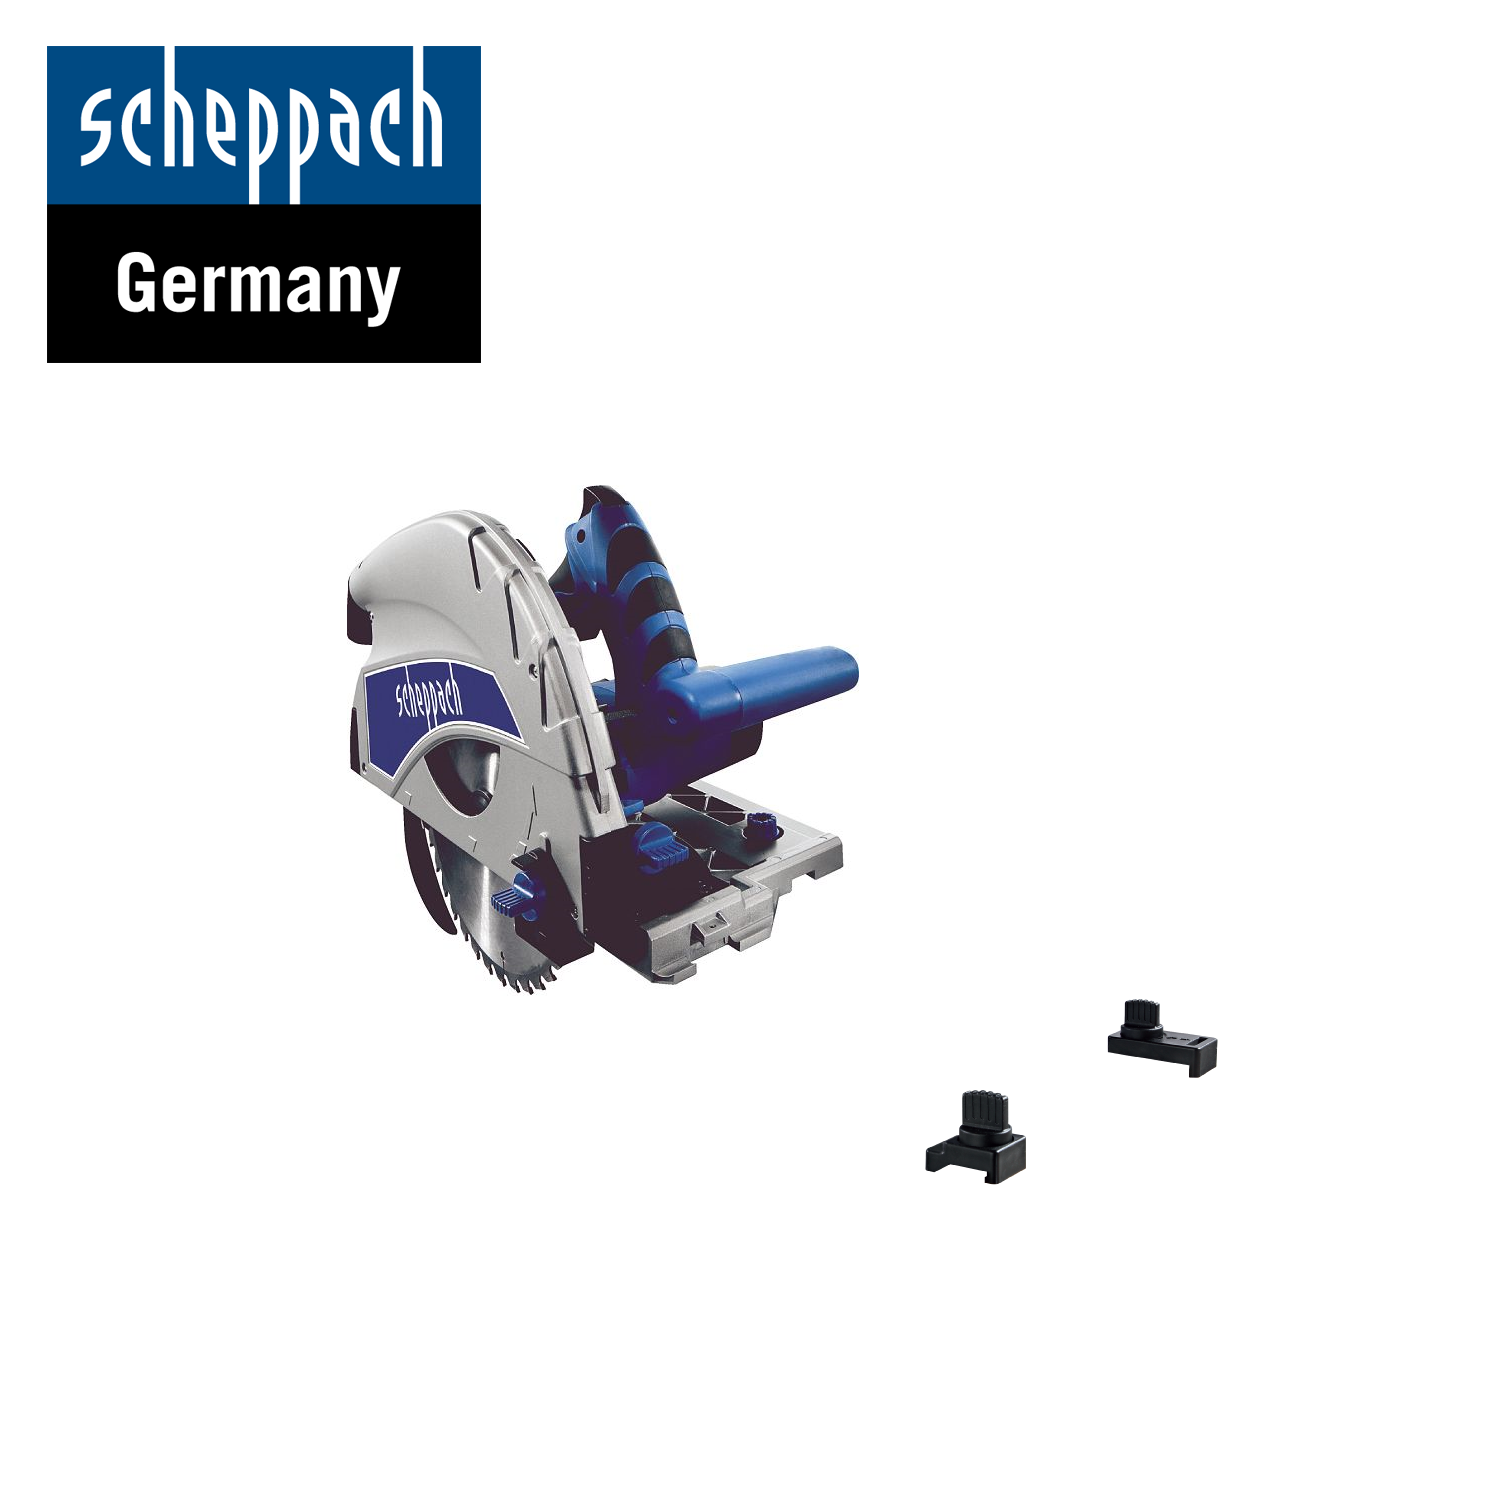 Ръчен потапящ циркуляр Scheppach PL75, 1600W, 210мм